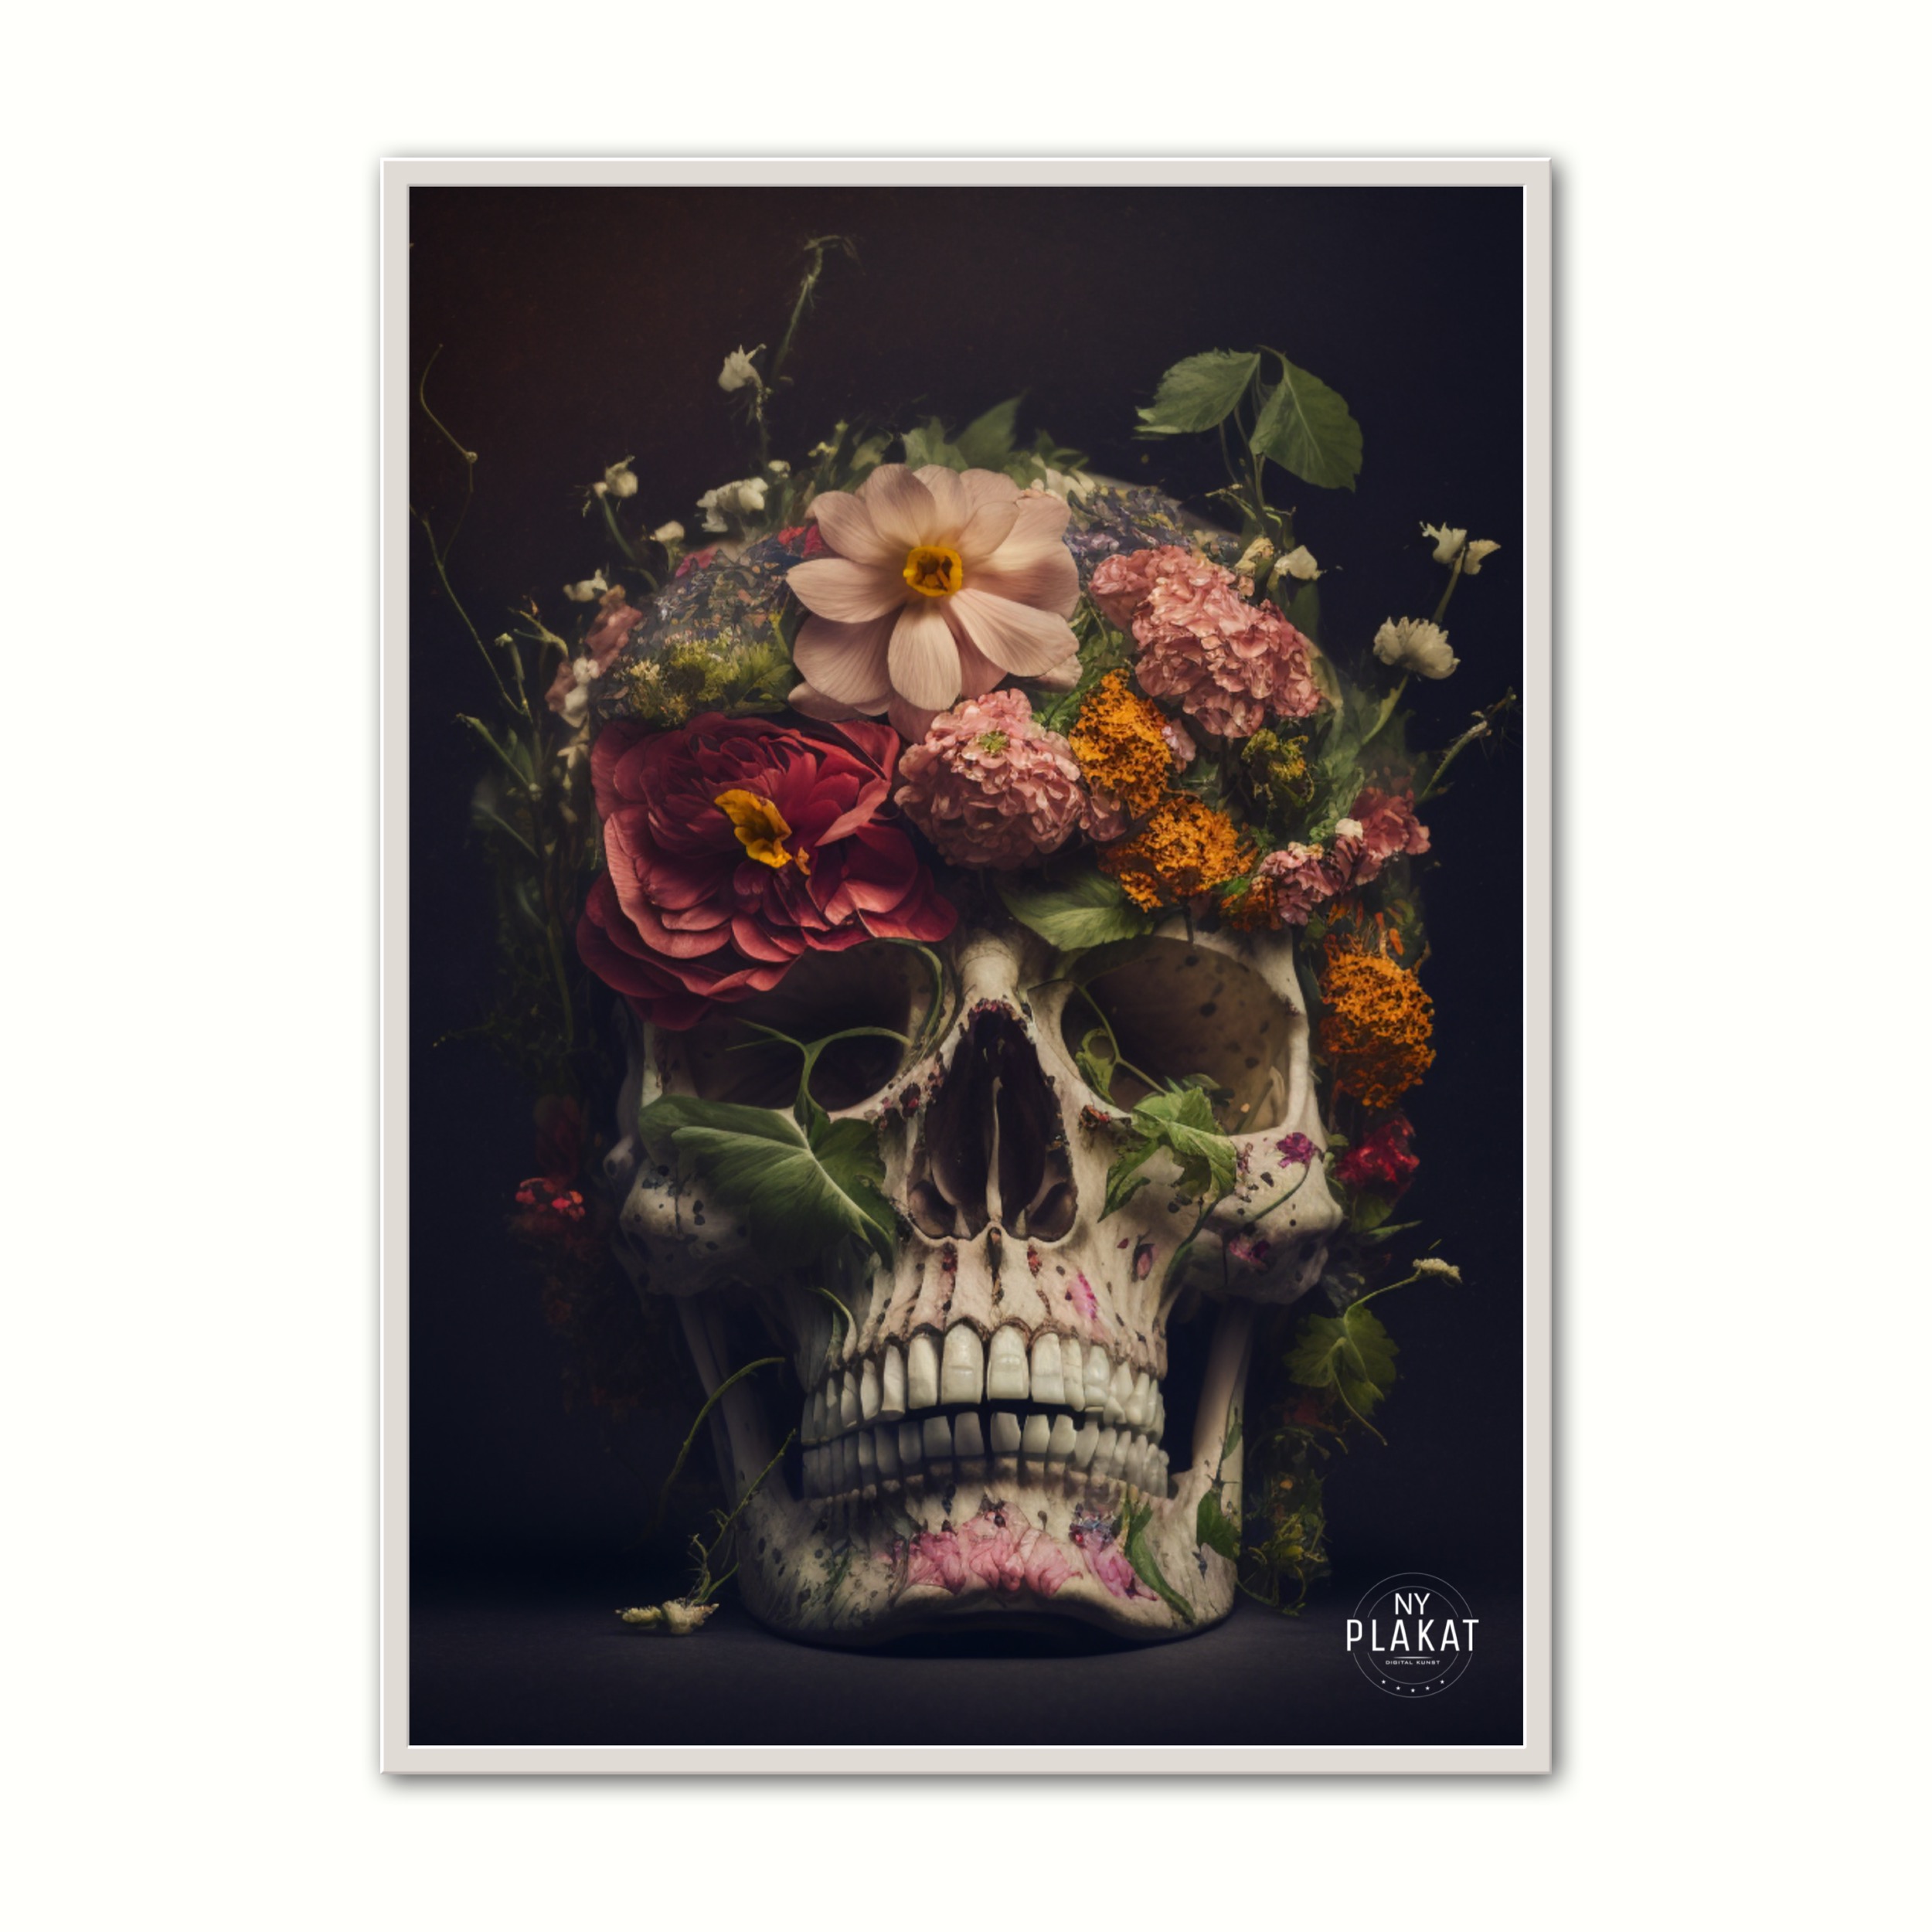 Billede af Plakat med Skull With Flowers No. 2 21 x 29,7 cm (A4)